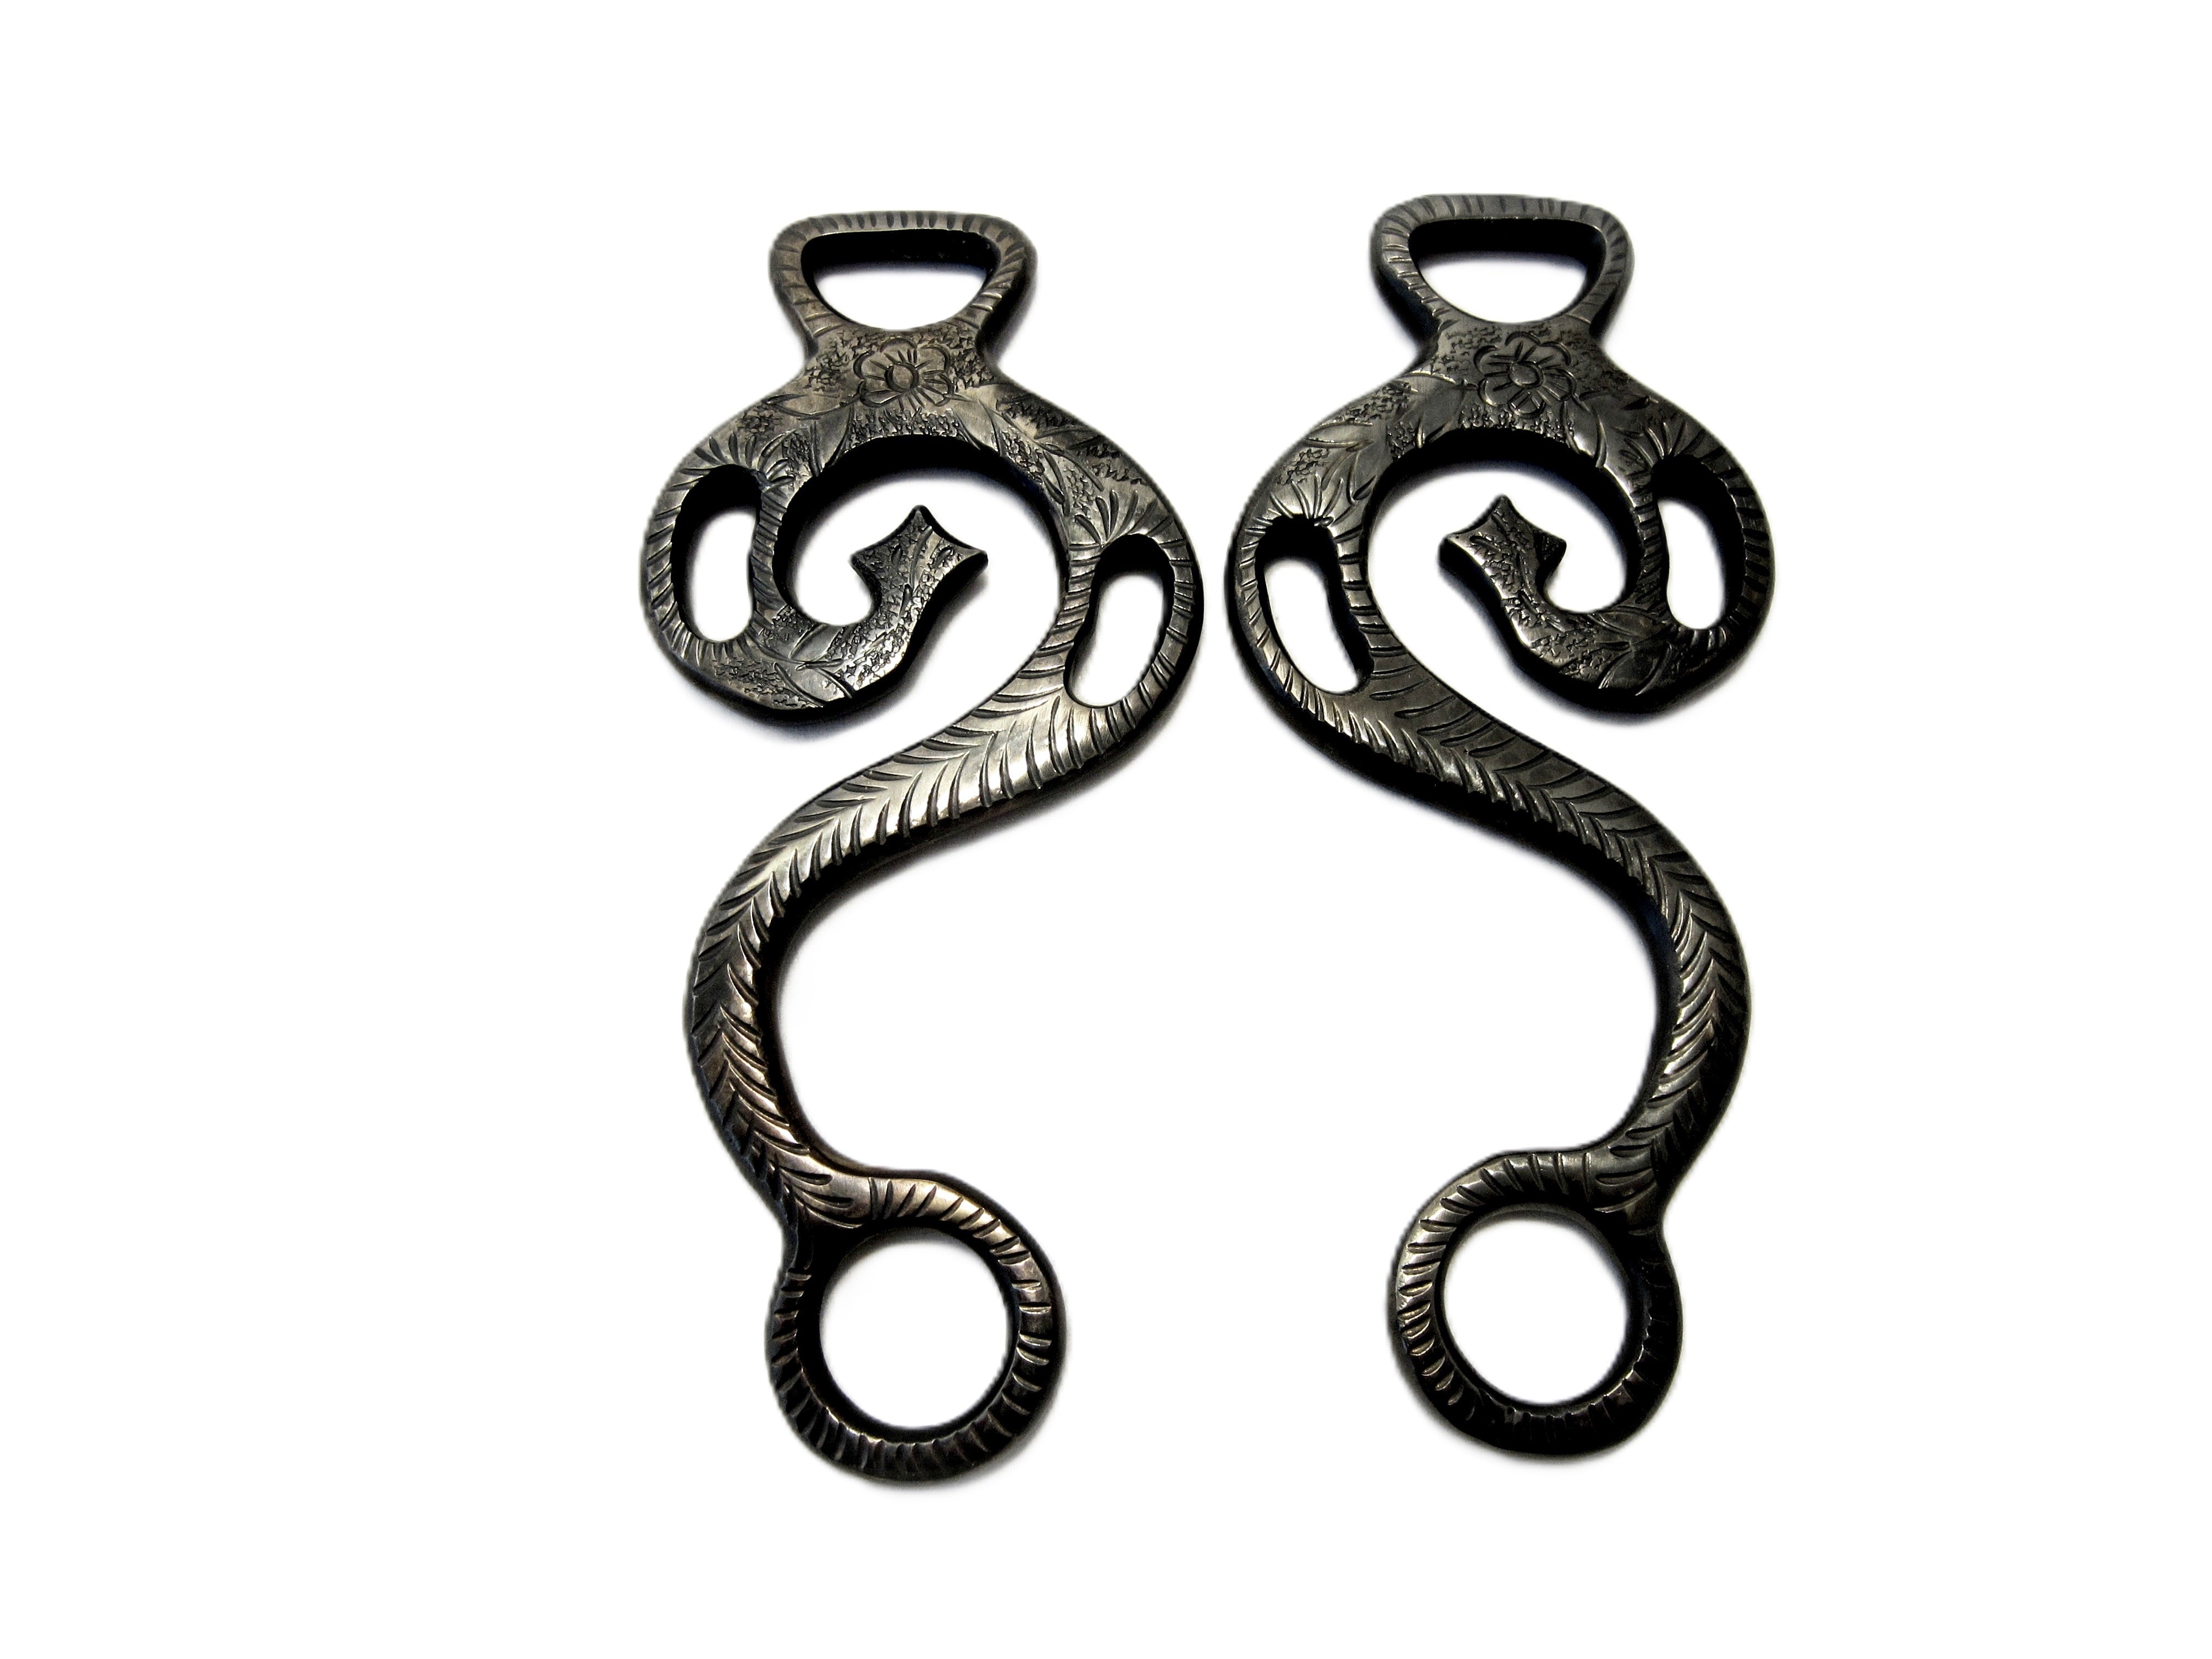 Hackamore "Baroque" noir antique - 1 paire de cuisses décorées